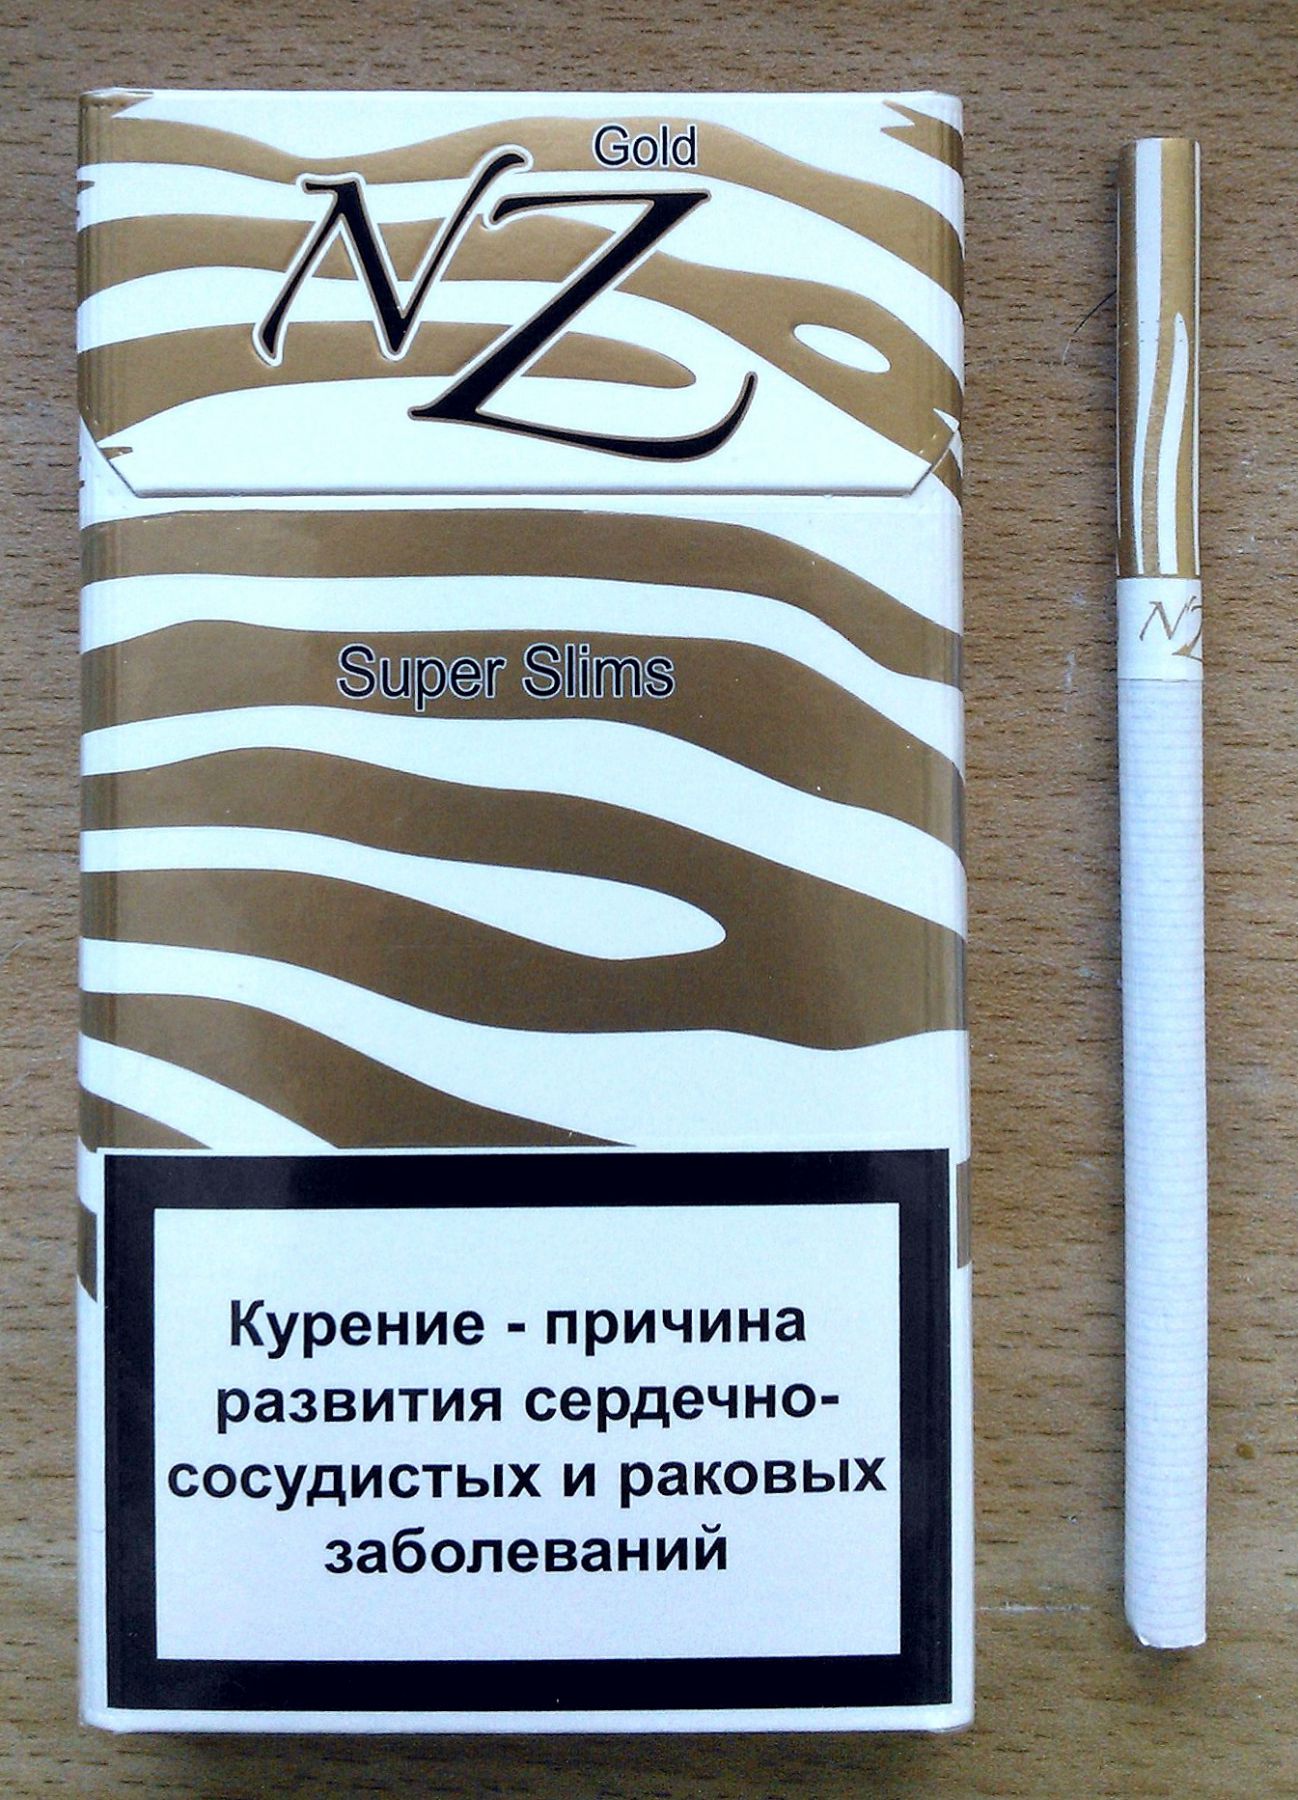 Nz gold. Сигареты Белорусские НЗ 8 НЗ 10. НЗ сафари сигареты компакт. Сигареты nz Gold super Slims. Белорусские сигареты НЗ Голд.